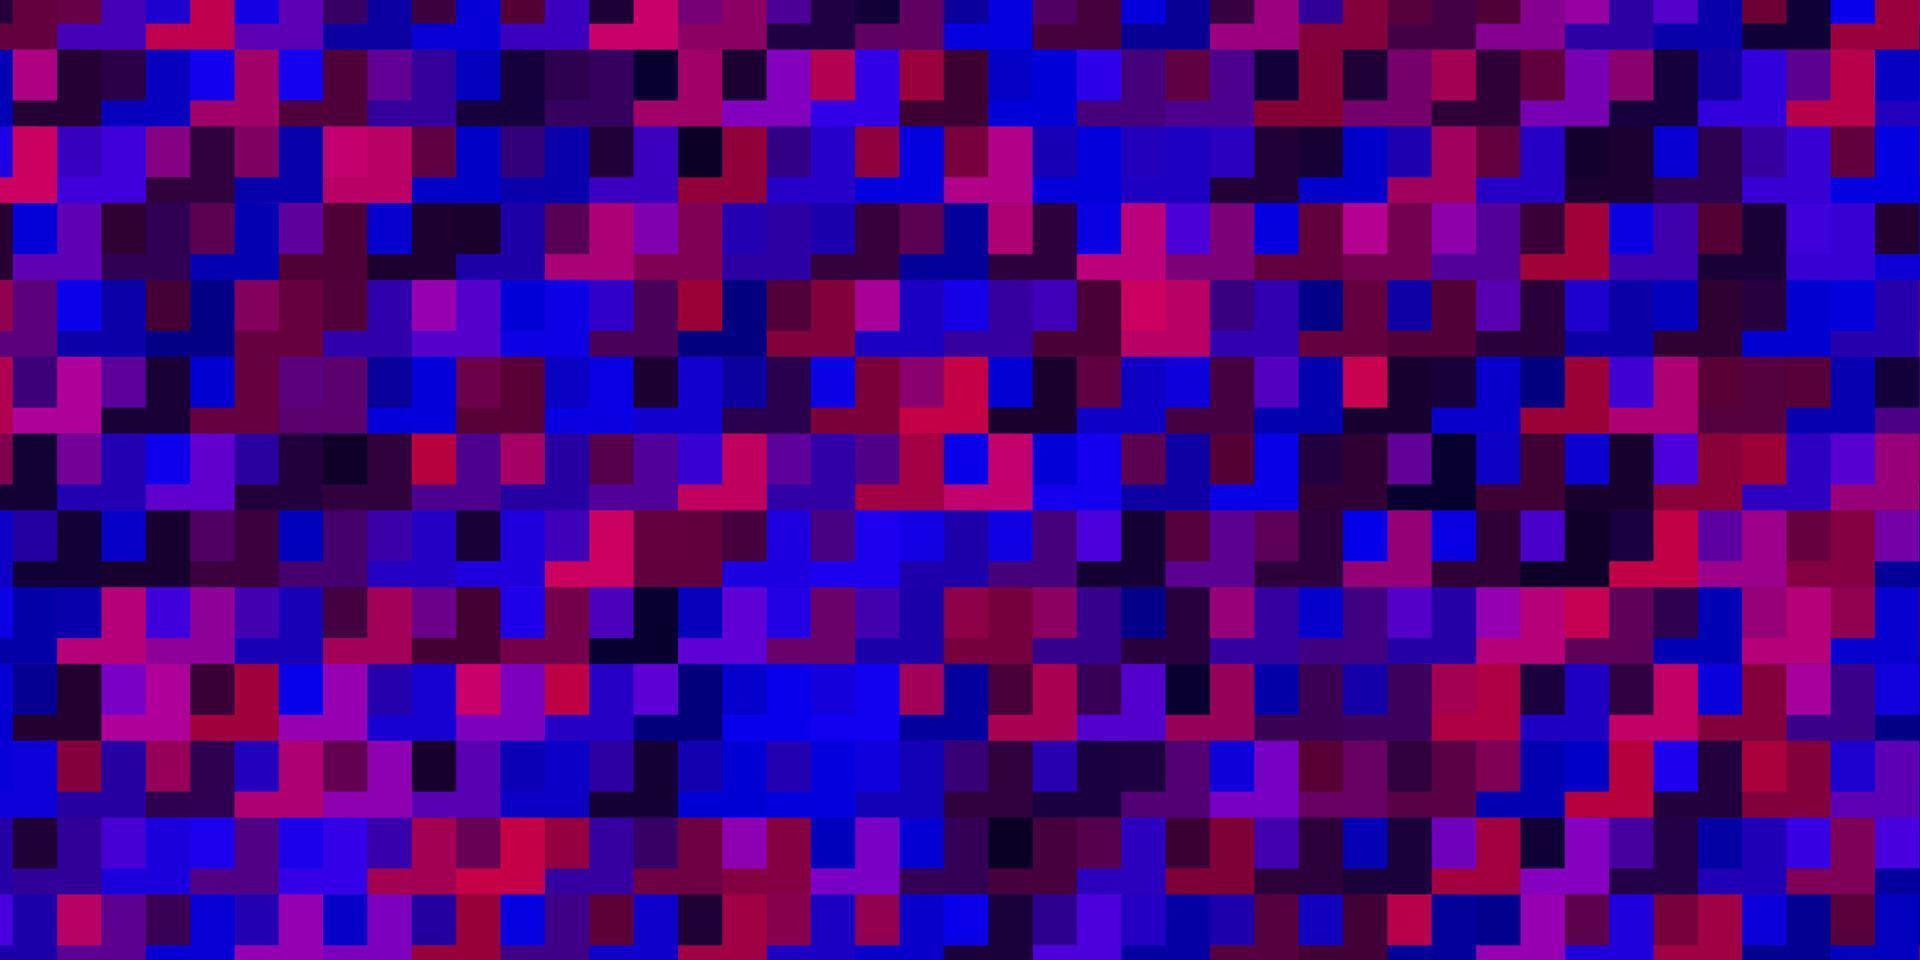 plantilla de vector azul claro, rojo en rectángulos.